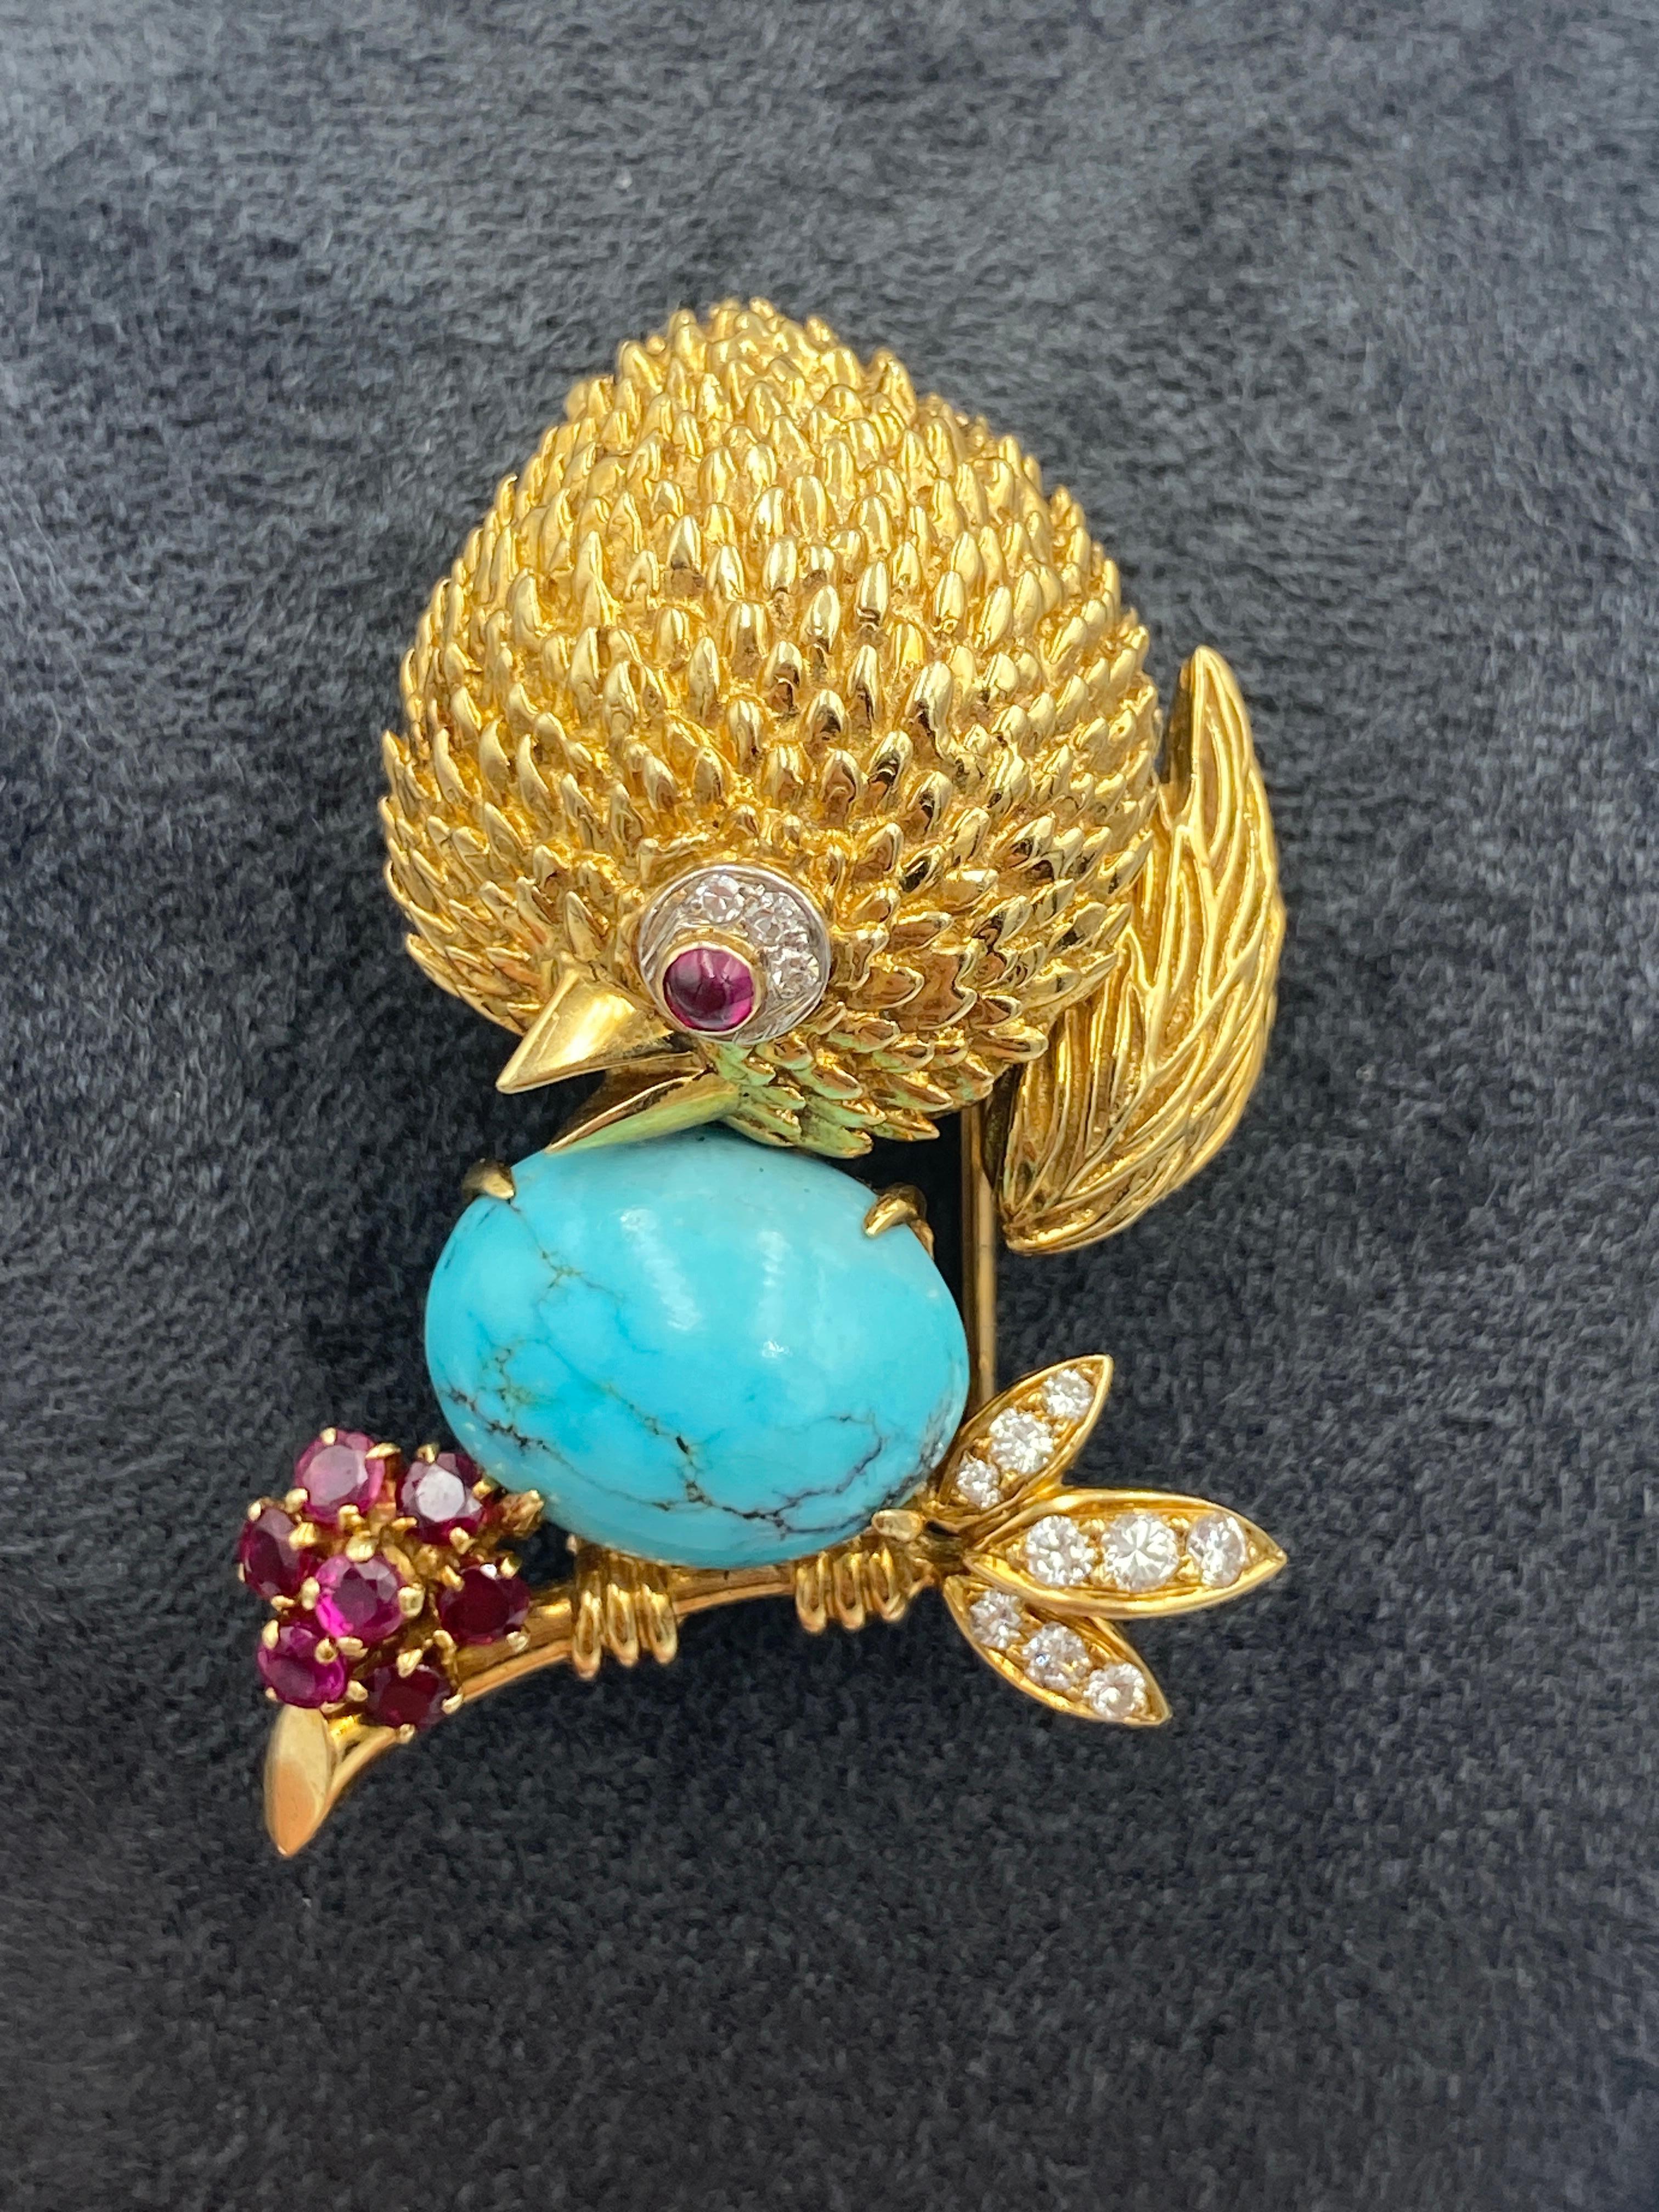 Diese entzückende VCA-Kükenbrosche aus den 1960er Jahren ist aus 18-karätigem Gold gefertigt und mit kleinen Diamanten und Rubinen im Rundschliff sowie einem großen Cabochon-Türkis als Ei geschmückt. Es wäre eine schöne Ergänzung für jede Sammlung.